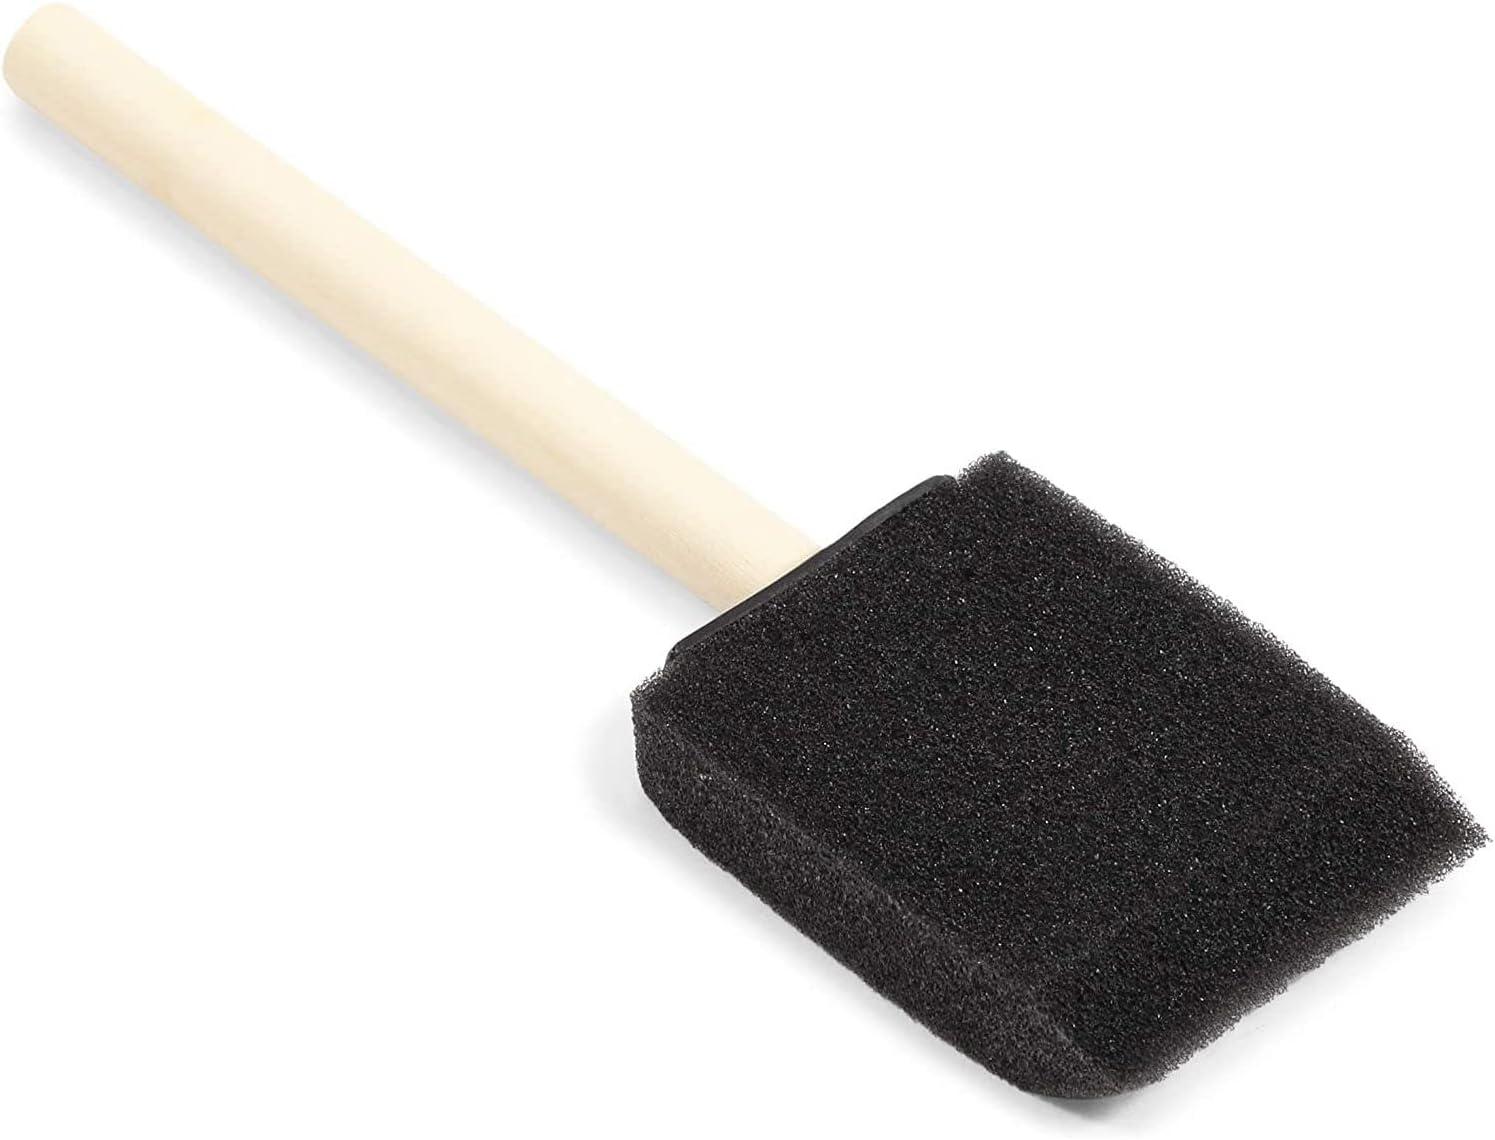 Sponge Brush Wooden Handle, Foam Paint Brush Sponge